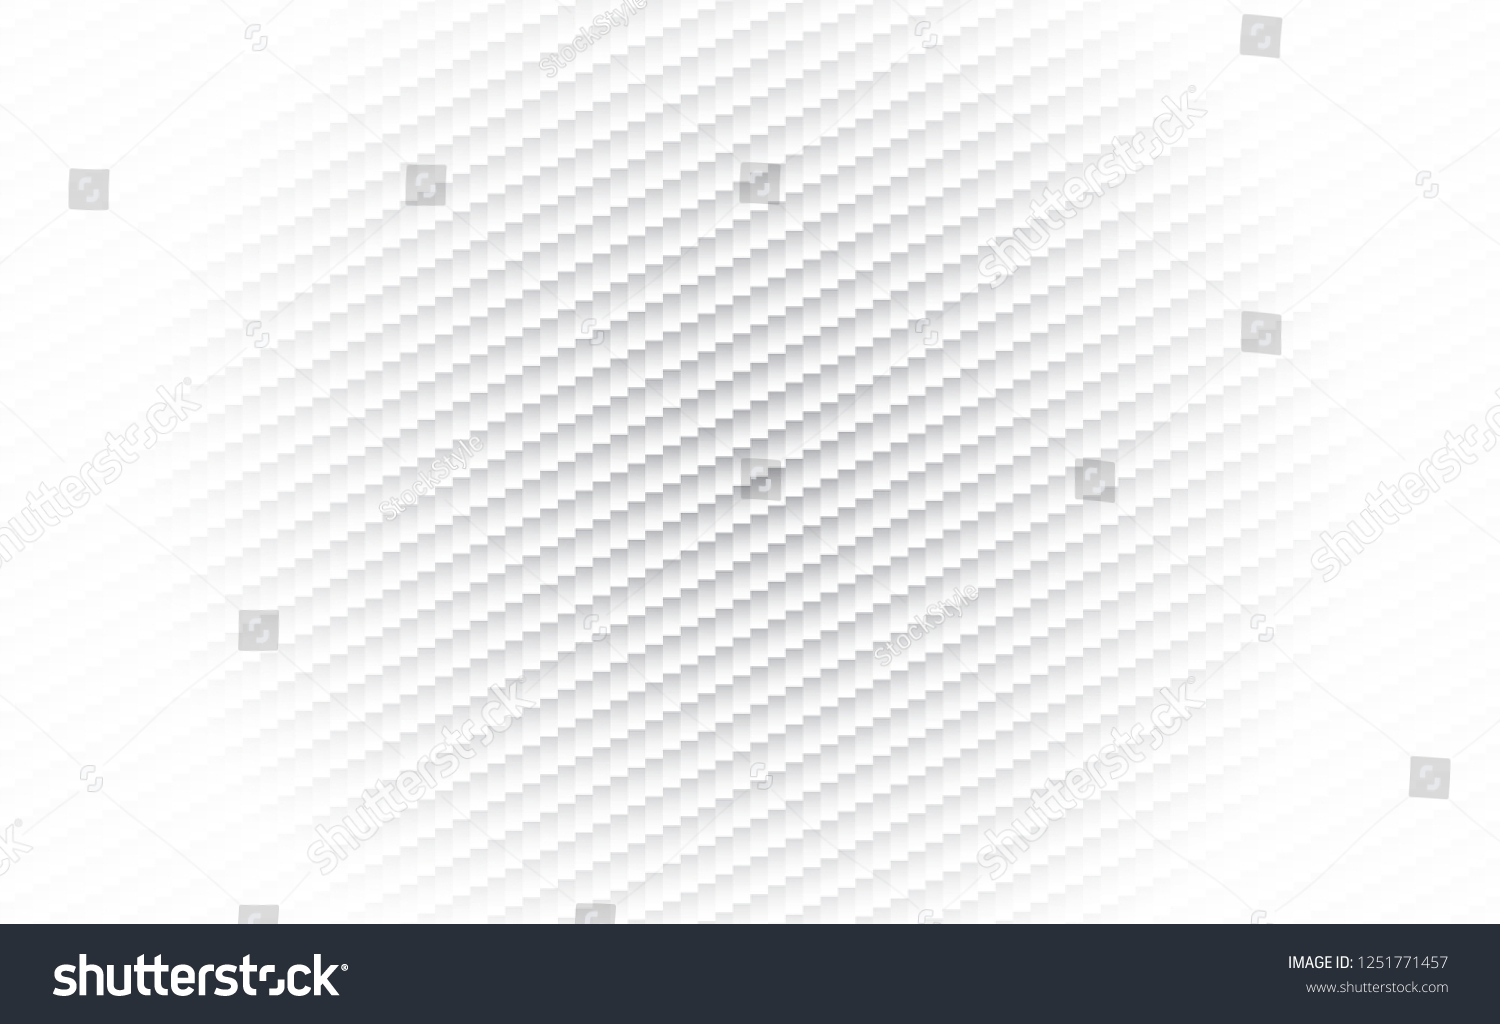 SVG of white background of kevlar, carbon fiber abstract design. vector illustration svg